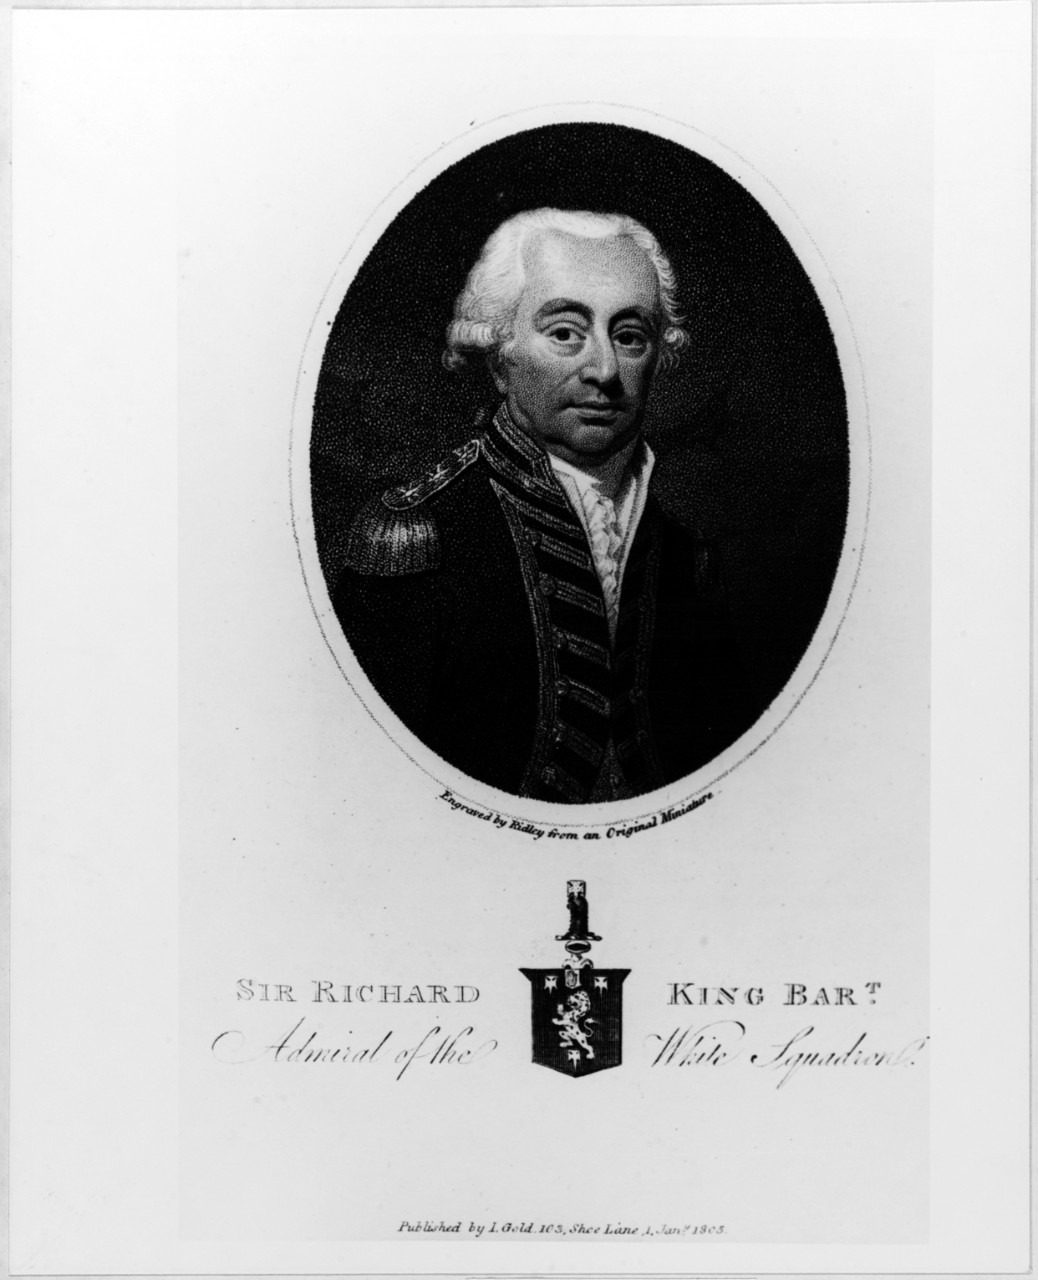 King, Richard (1730-1806)